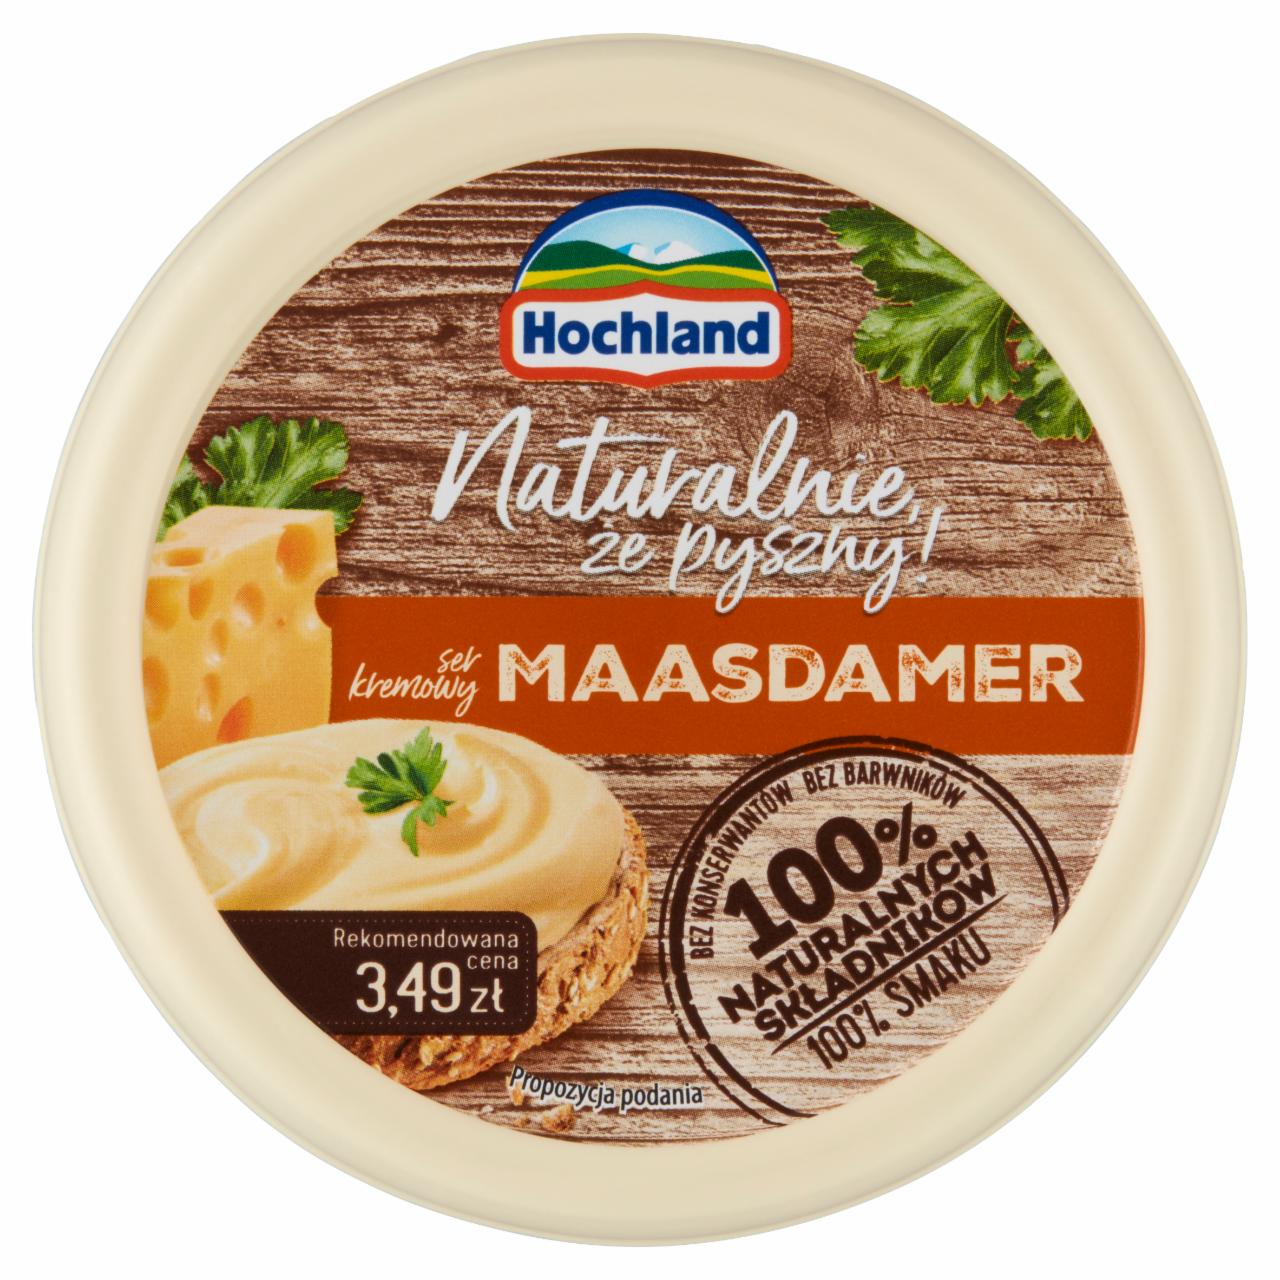 Zdjęcia - Maasdamer ser kremowy Hochland